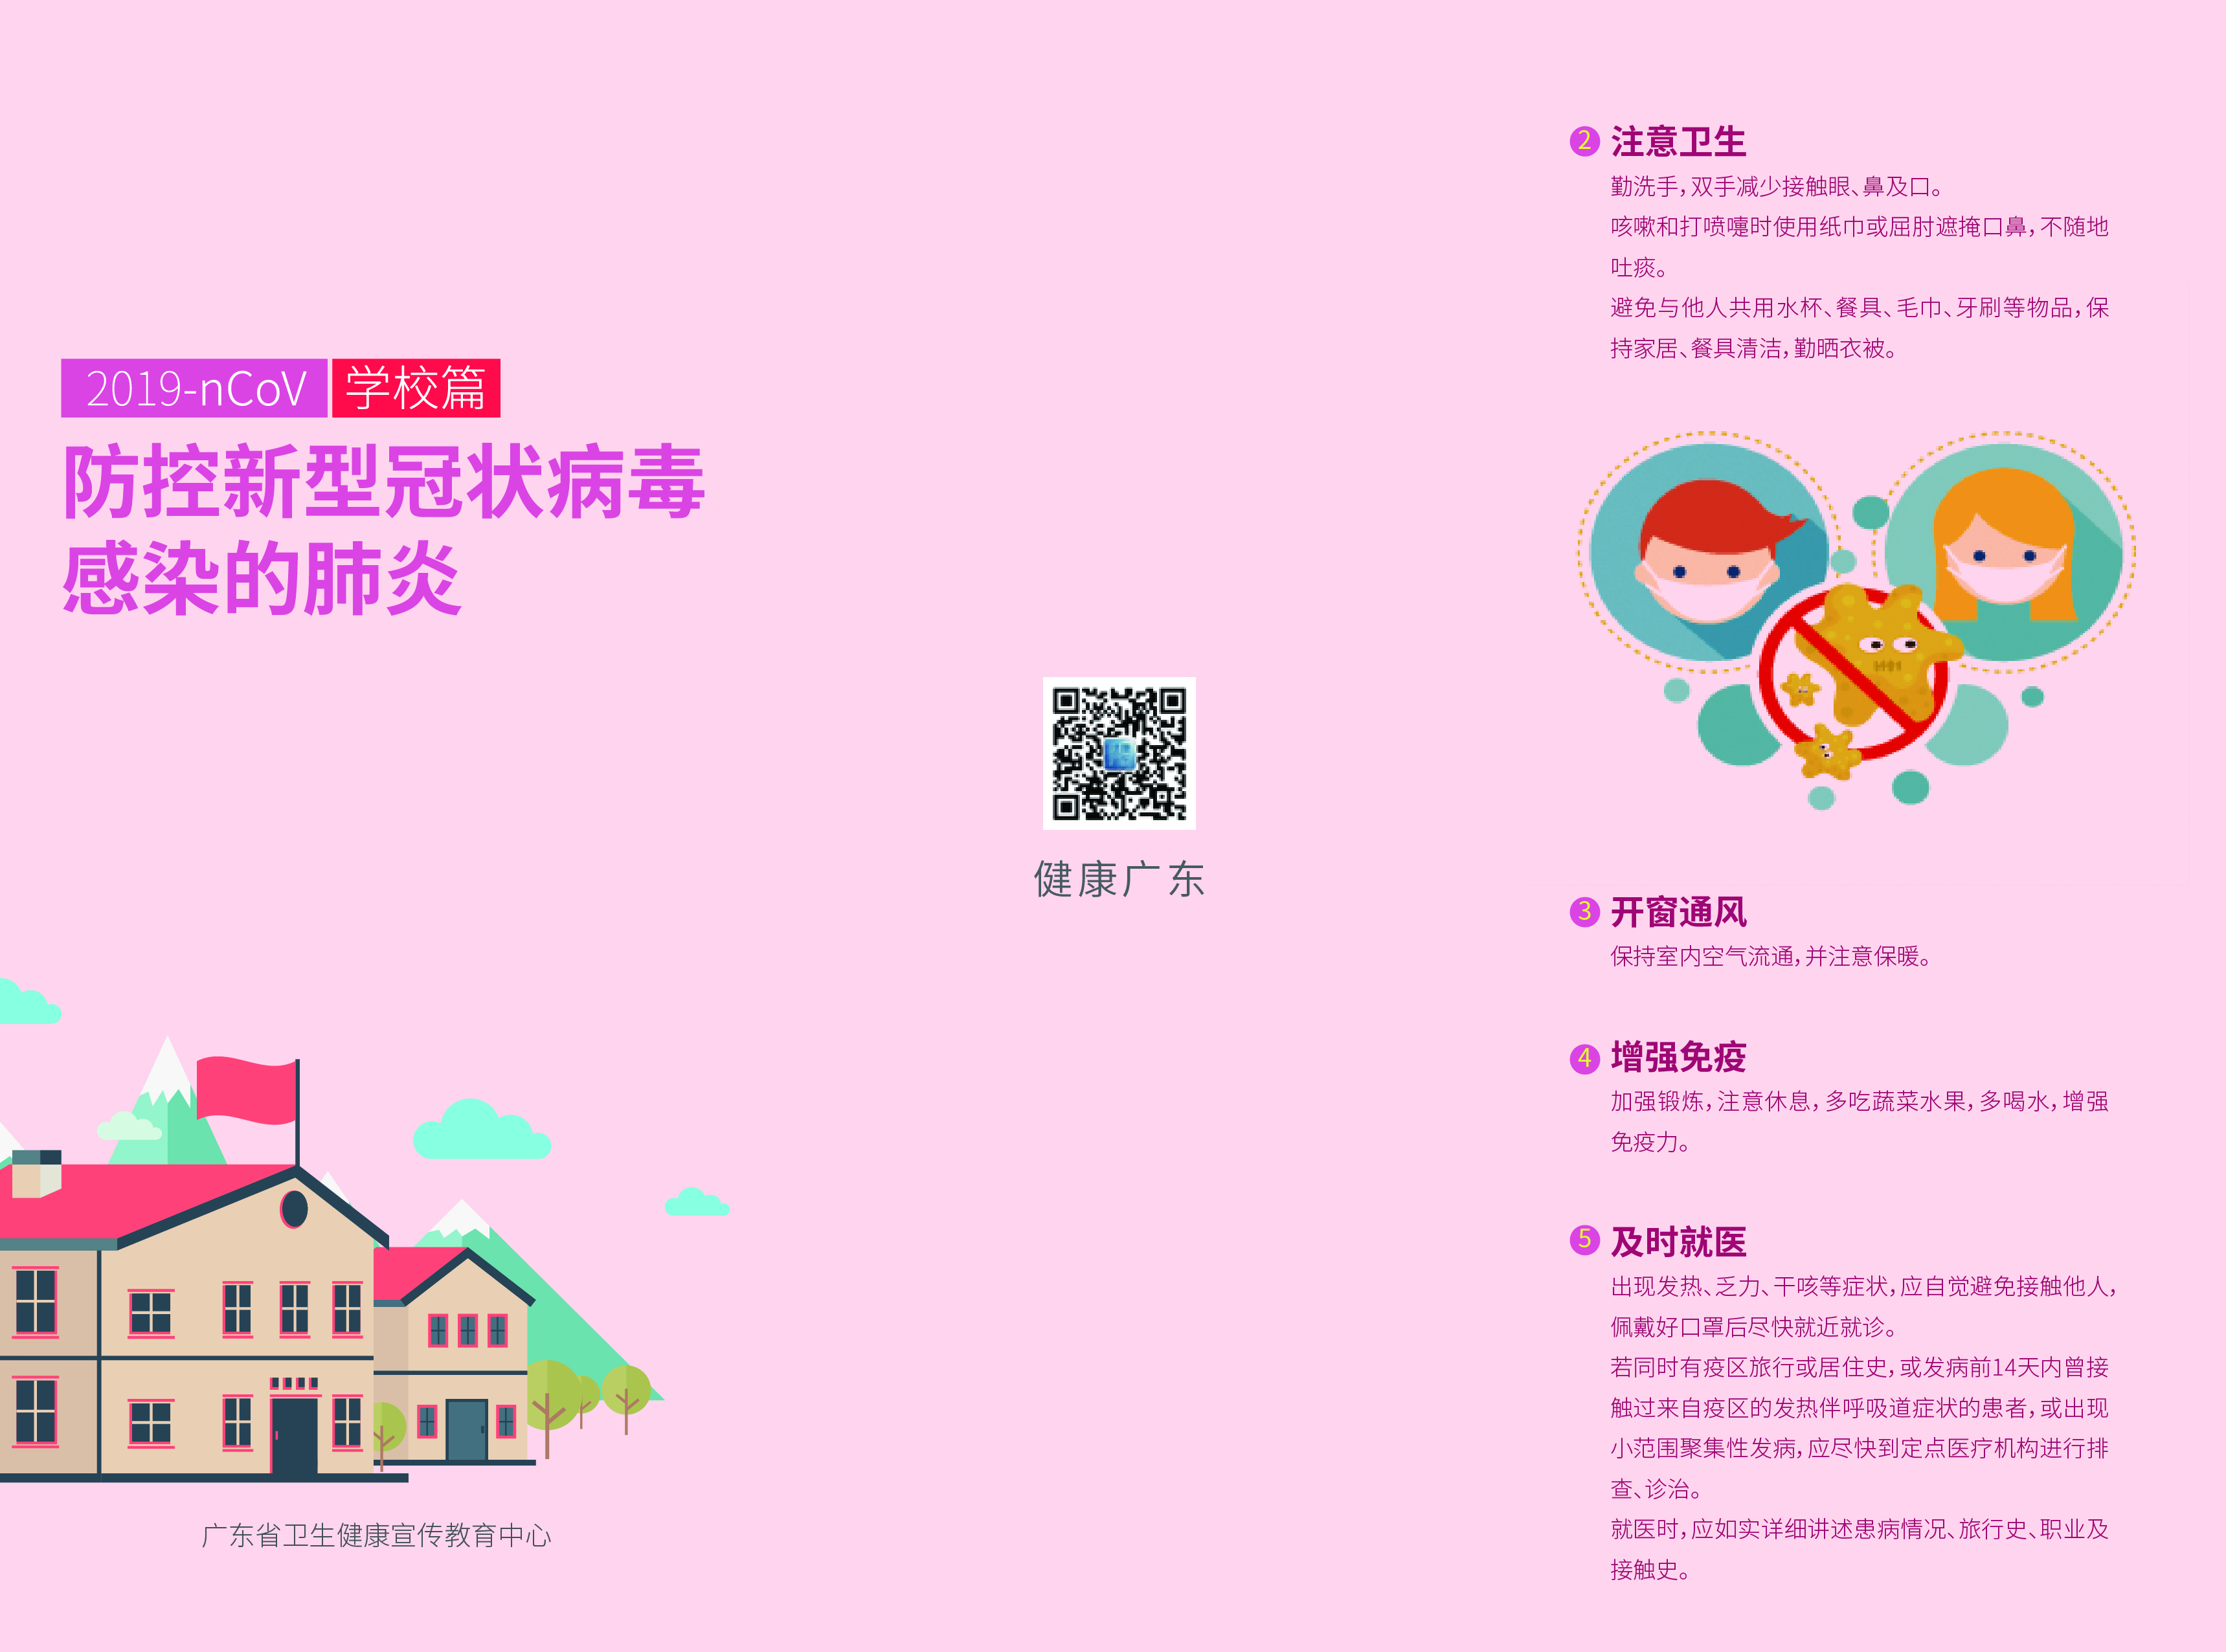 2020-0122-广东防疫状病毒感染-折页(学校篇)_画板 1.jpg